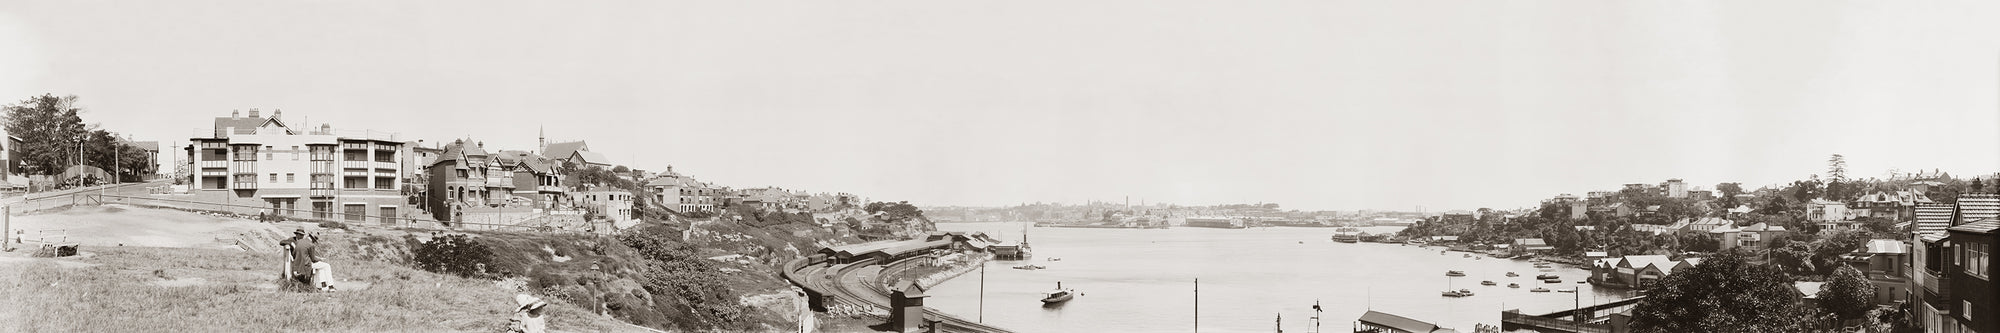 Lavender Bay, Sydney NSW Australia 1920s